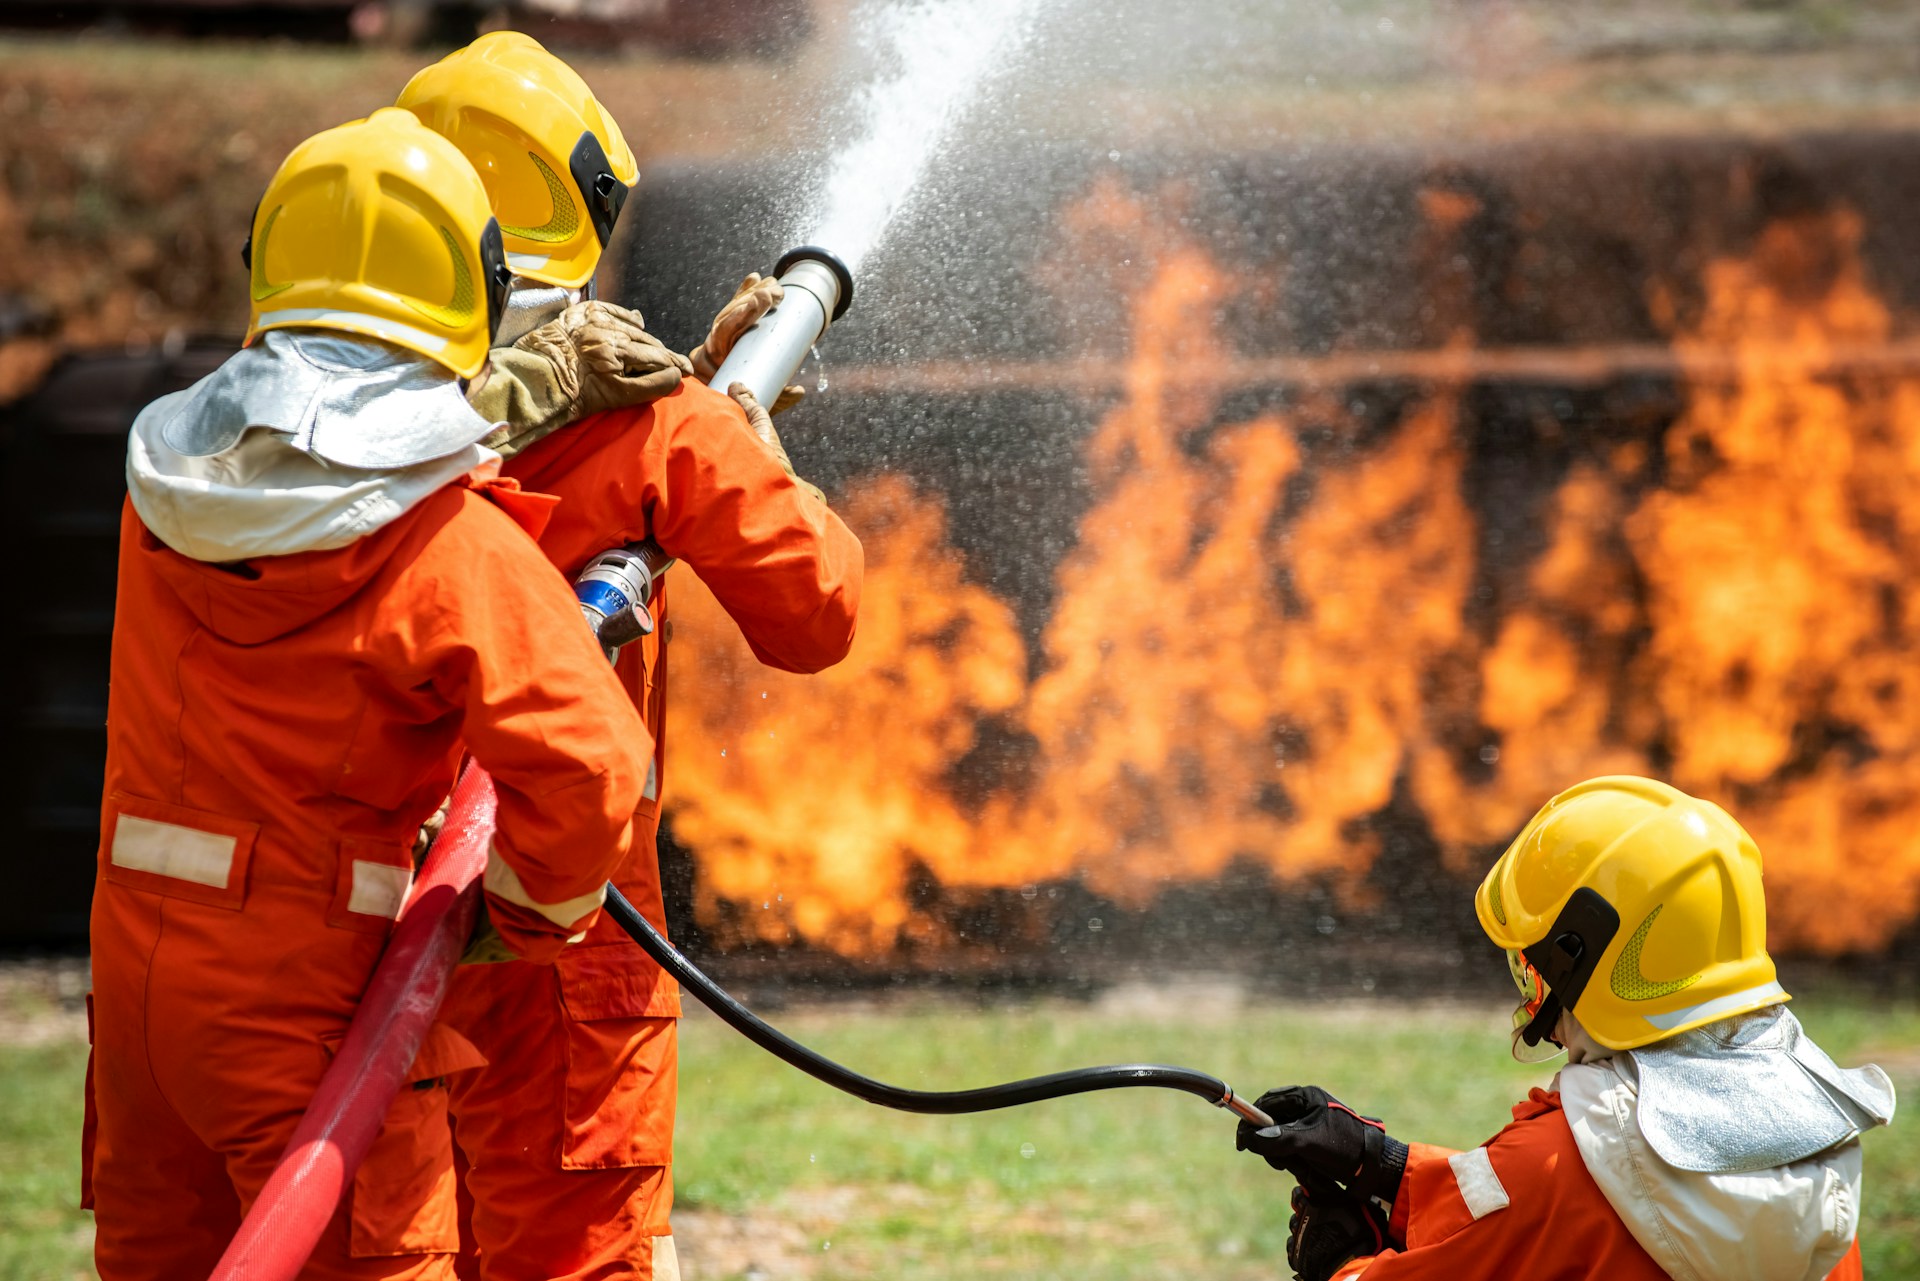 Anticipo de la seguridad contra incendios: Mallorca adelanta el periodo de prohibición de incendios